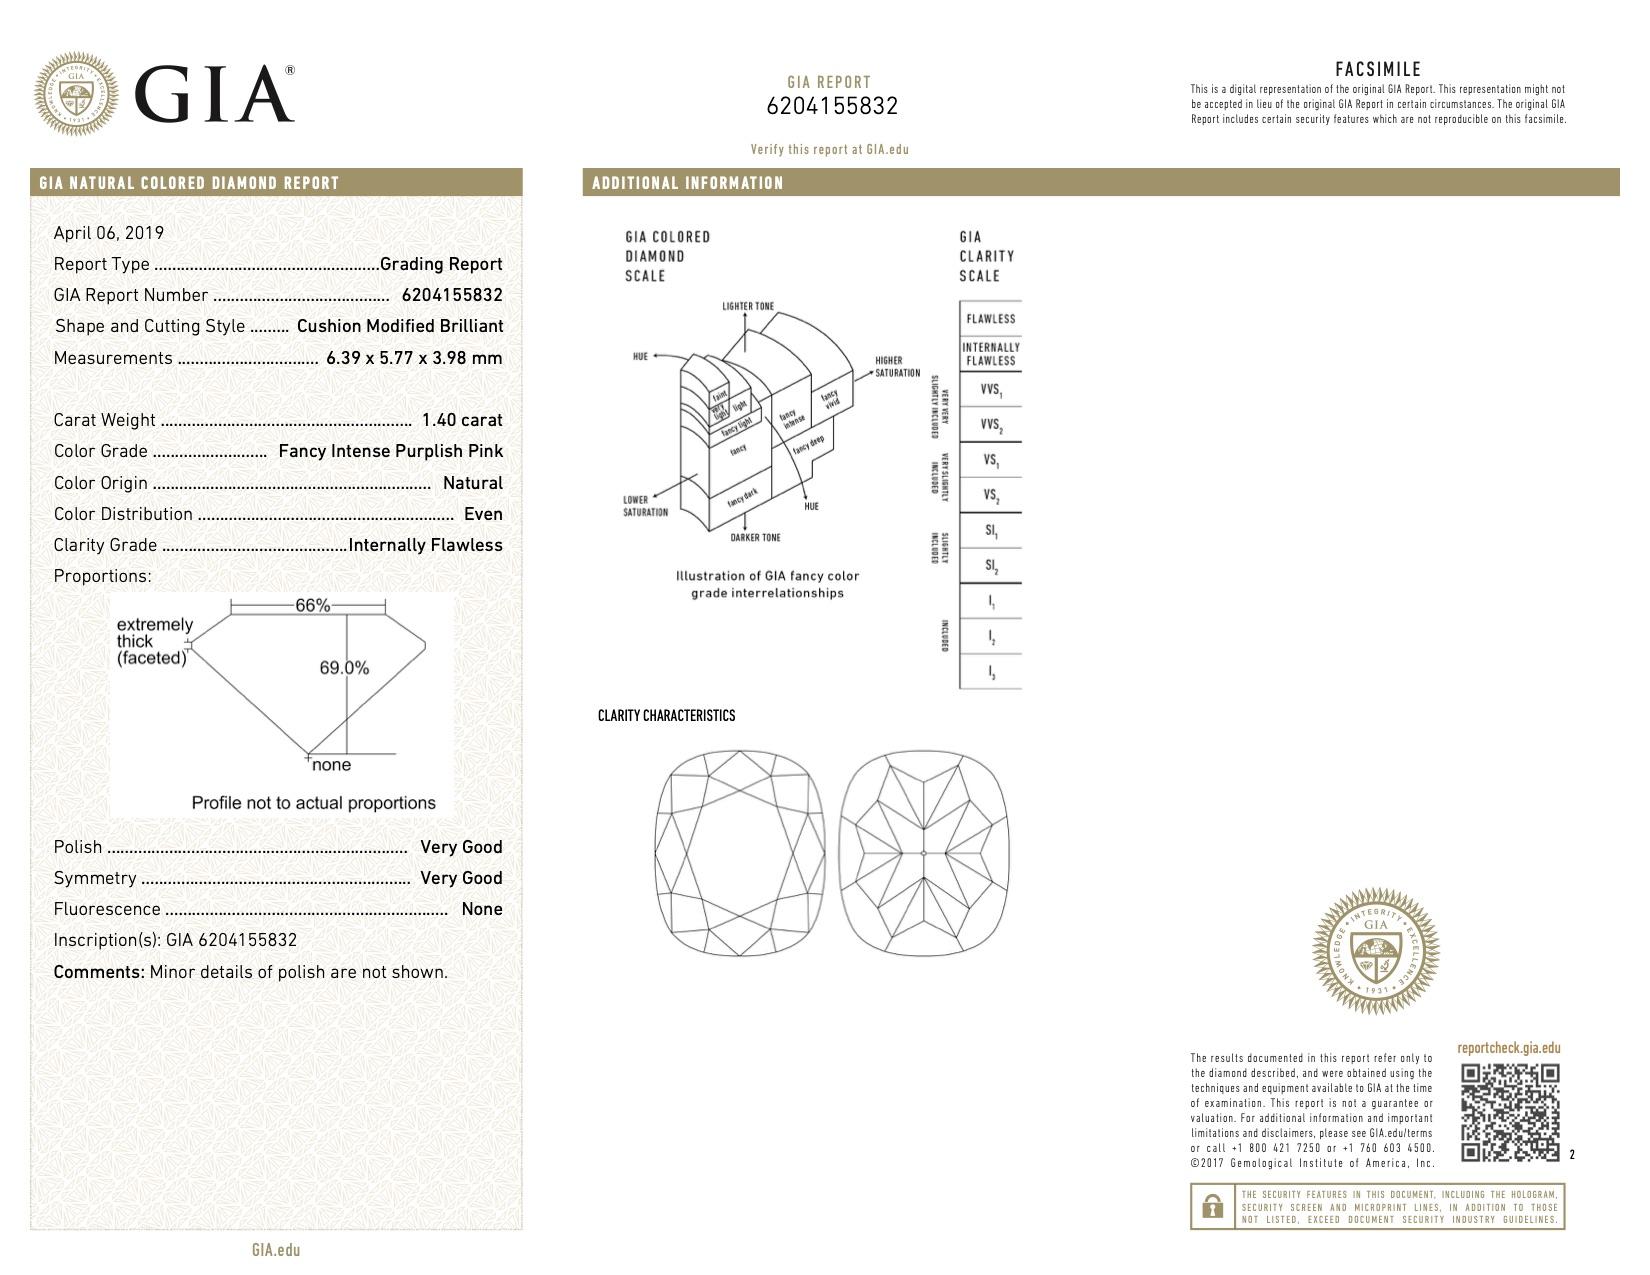 GIA Certified 1.40 Carat Cushion Cut Fancy Intense Purplish Pink Diamond Ring 2